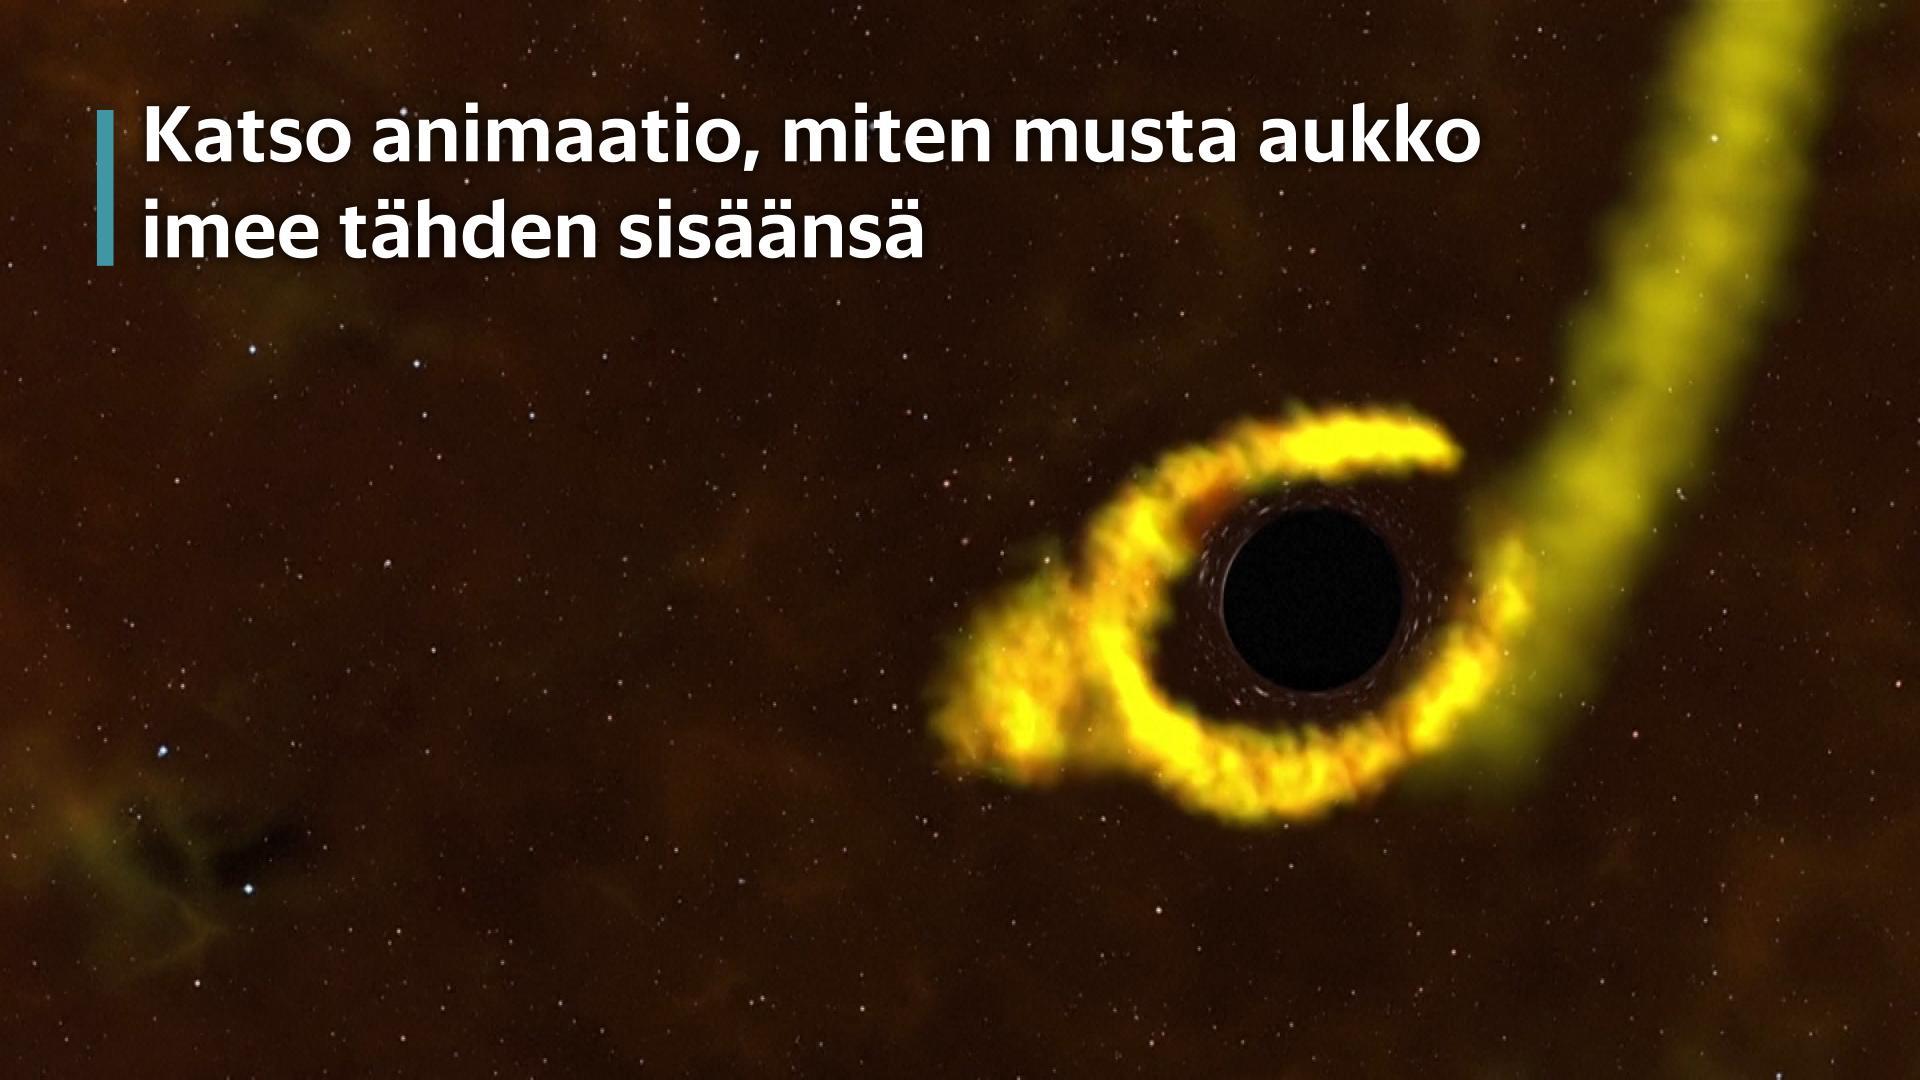 Katso animaatio, miten musta aukko imee tähden sisäänsä